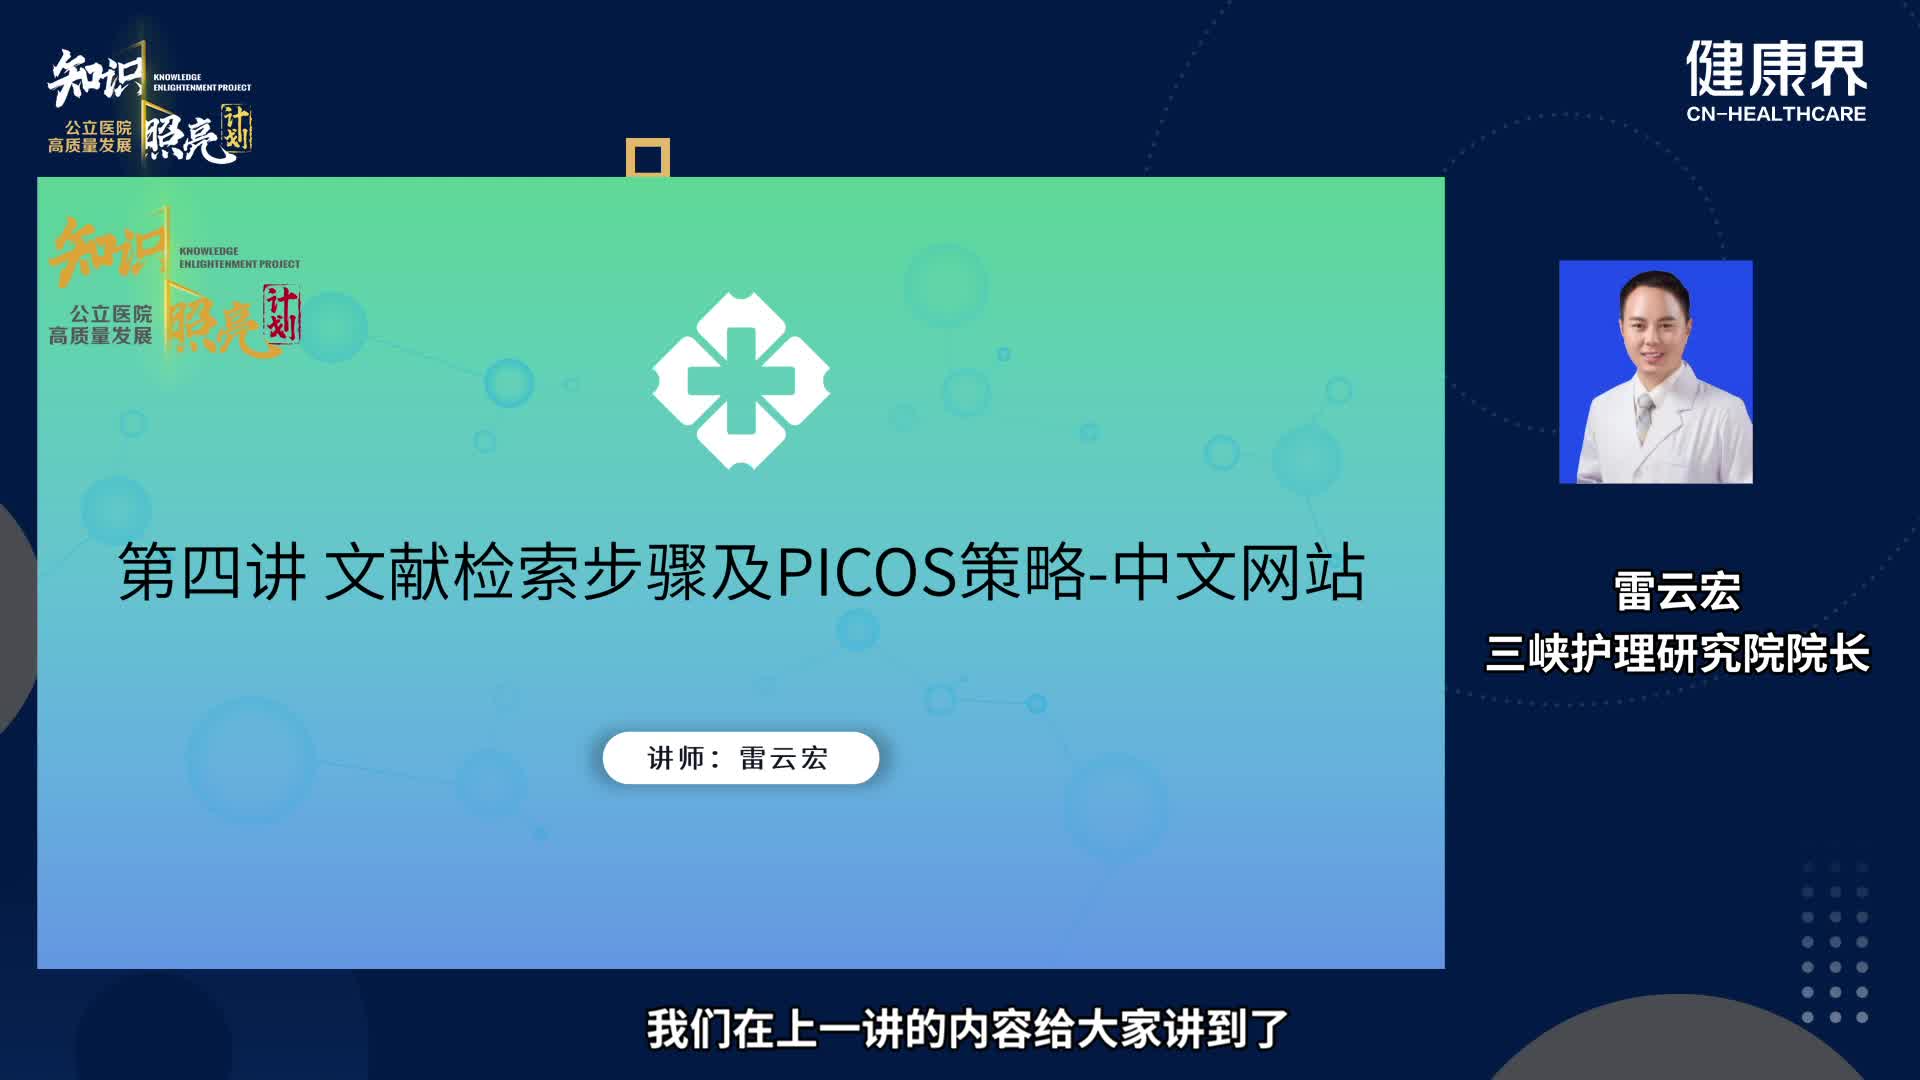 文献检索步骤及PICOS策略-中文网站